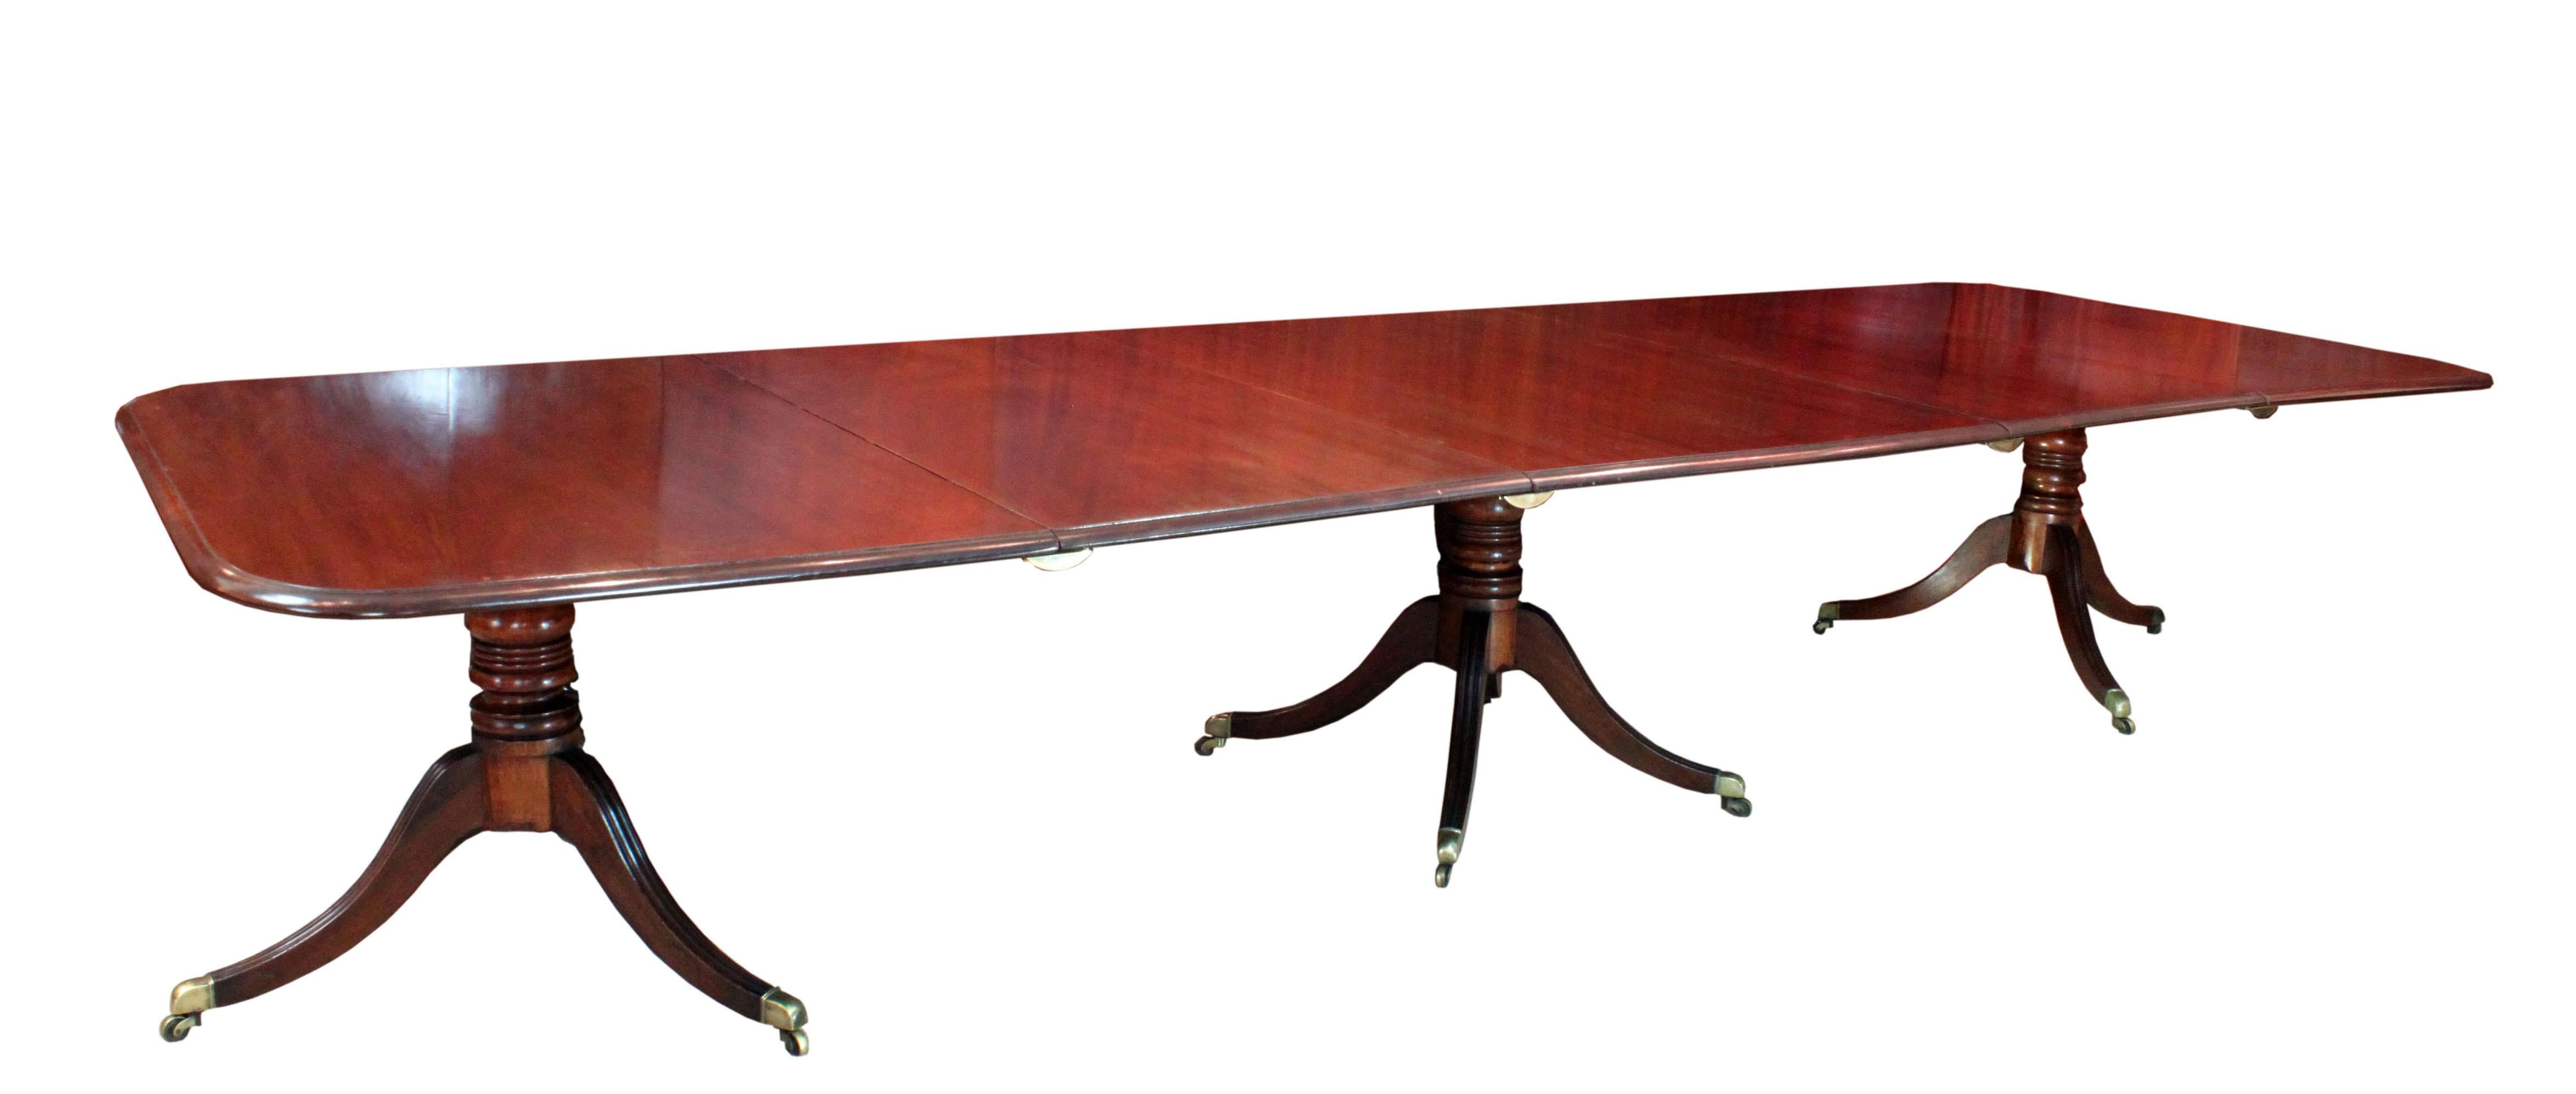 Ein feiner Regency-Tisch mit drei Säulen aus gemasertem Mahagoni. Gutes Modell mit großzügig bemessenen Platten, quadratischen Enden und einer Kombination aus einem vierfach gespreizten Mittelfuß und Dreibeinen an den Enden, die ein bequemes Sitzen